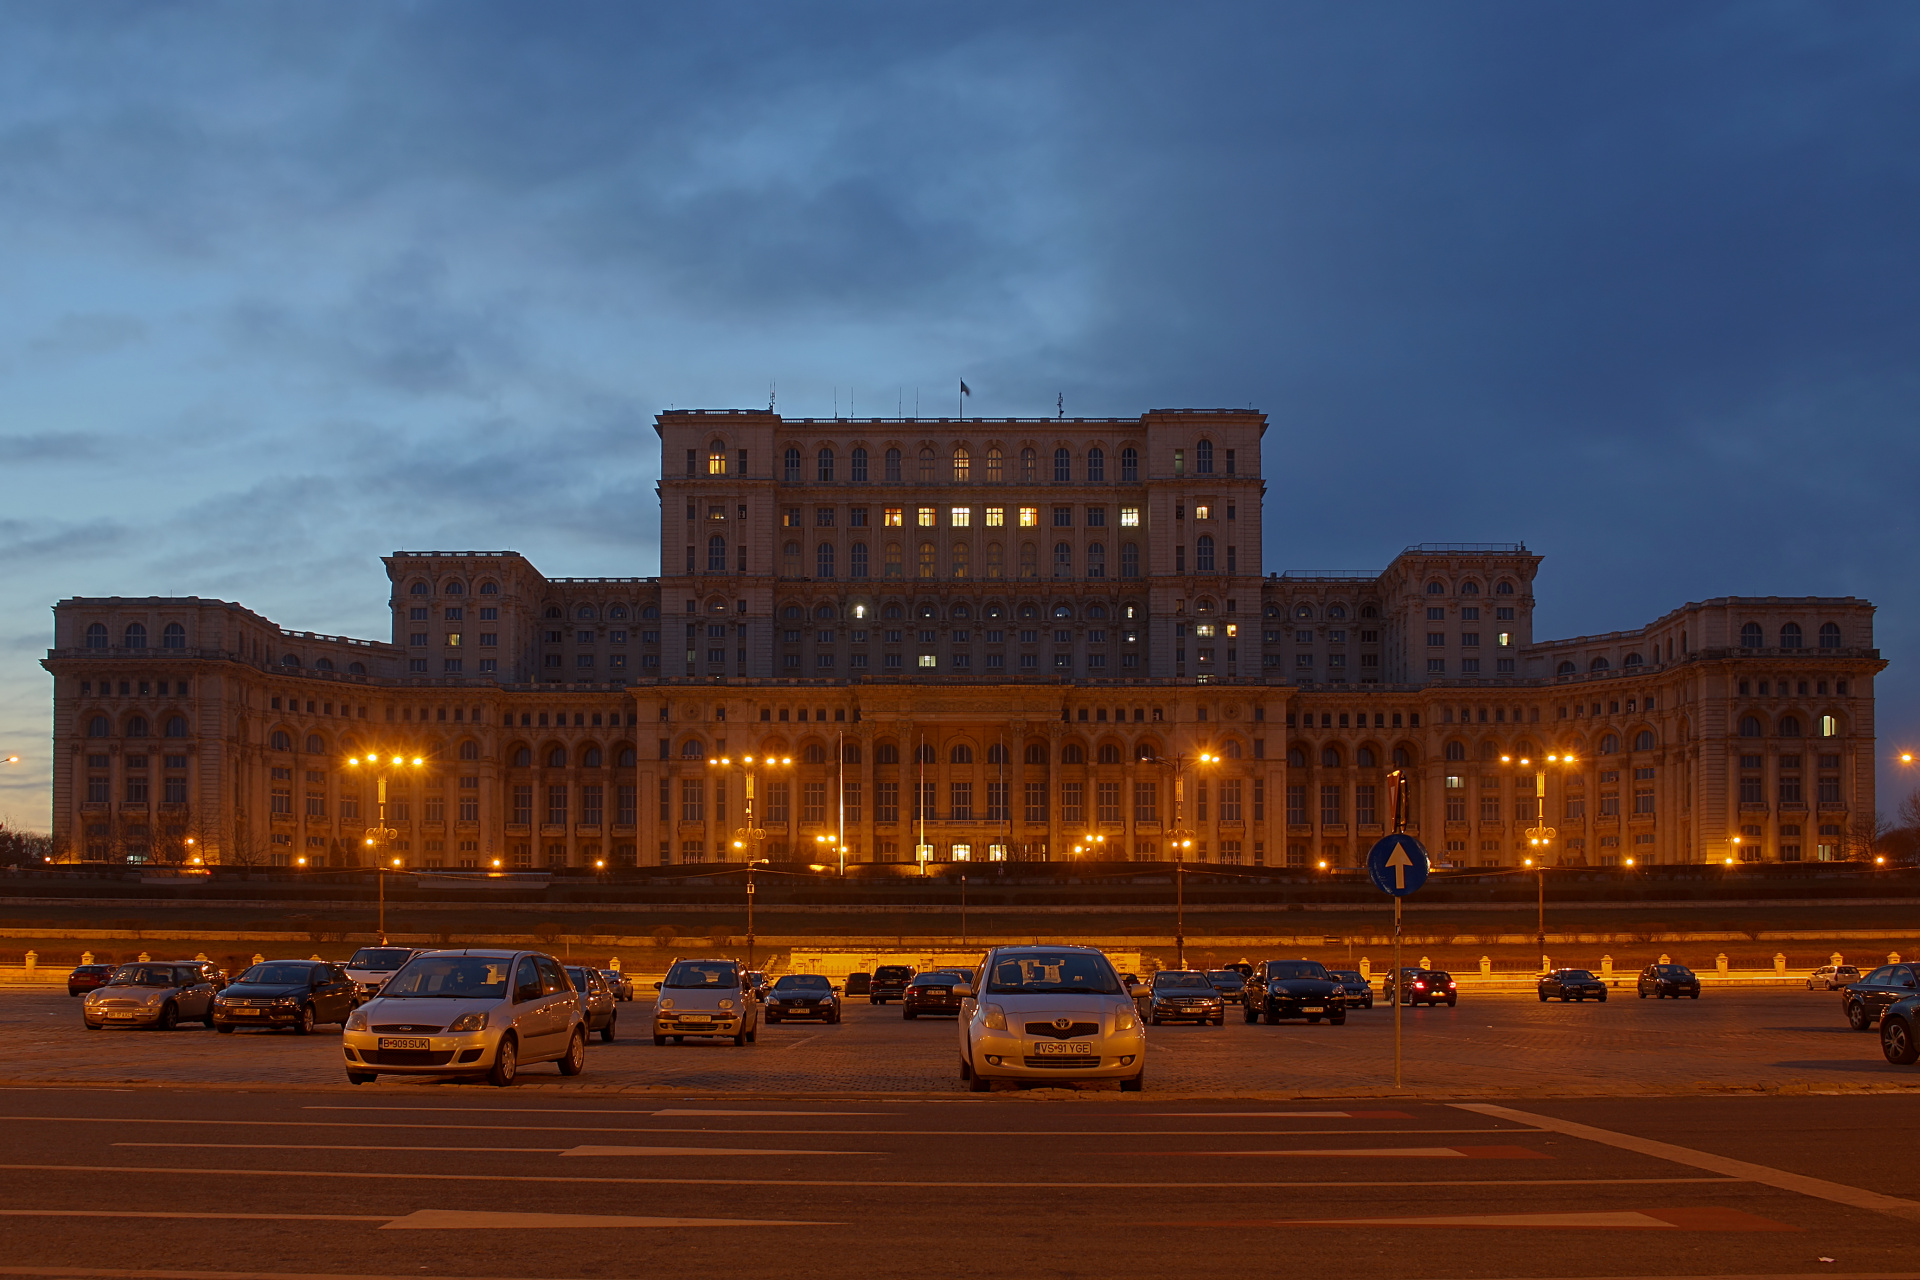 Palatul Parlamentului - Pałac Parlamentu (Podróże » Bukareszt)